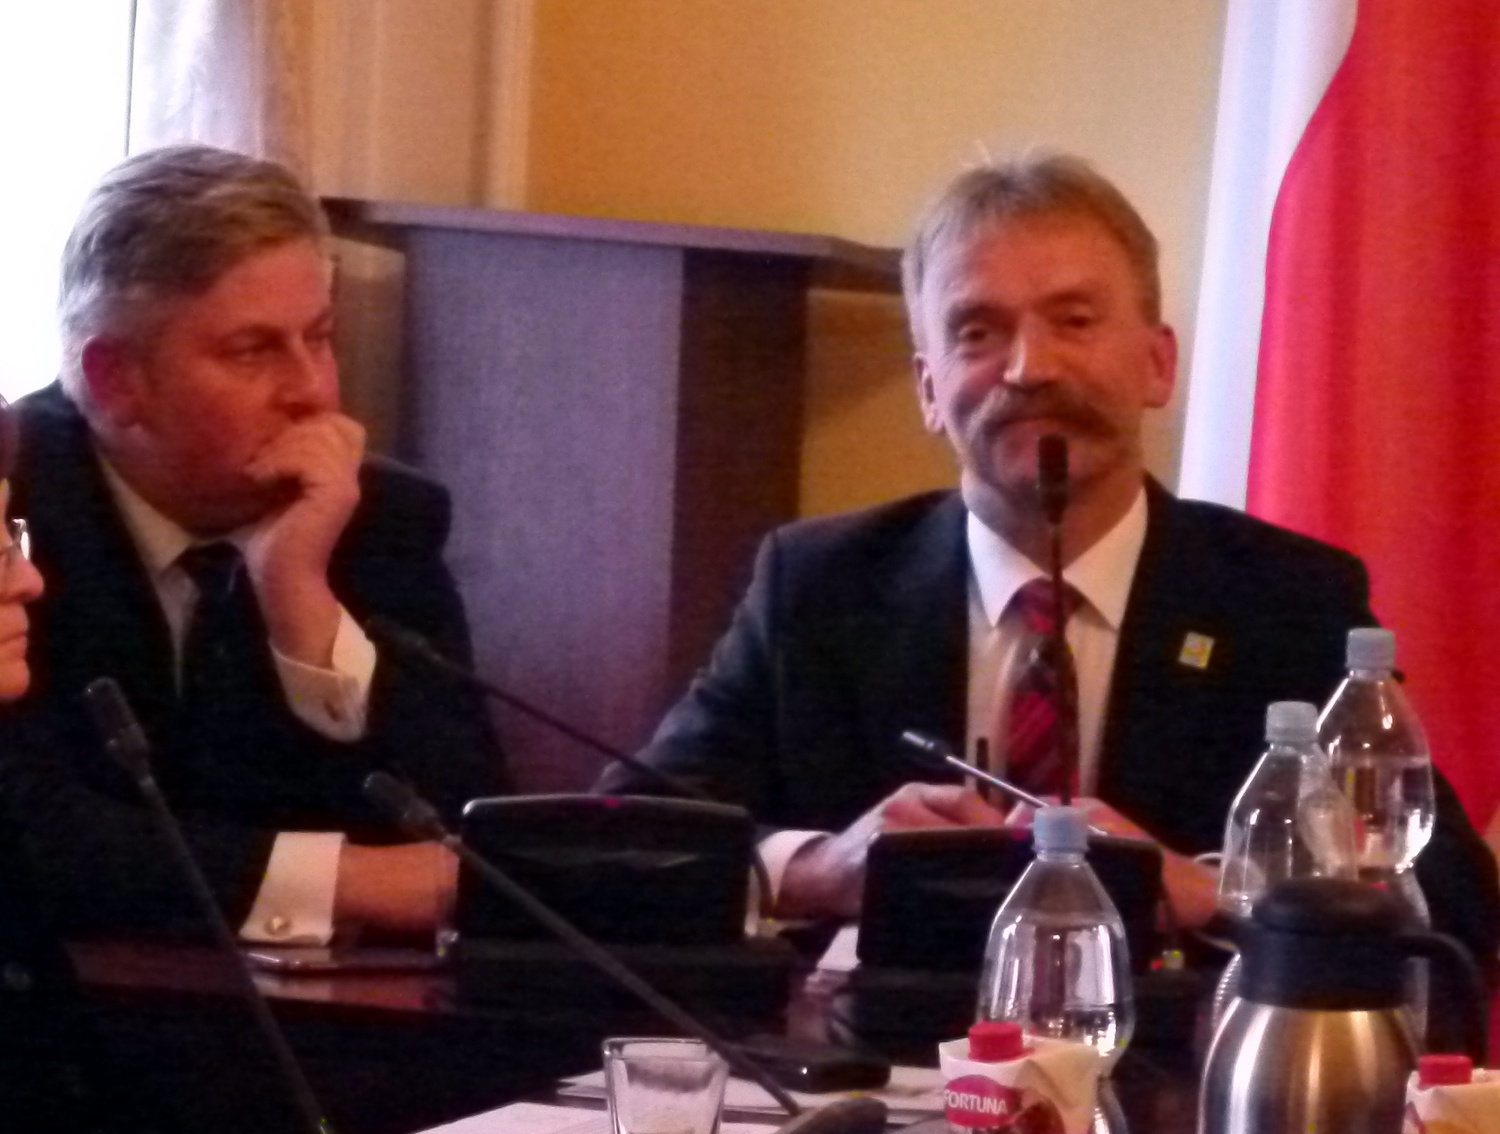 Zadowolony Krzysztof Kaliński (z prawej) po zwycięskich dla niego wyborach samorządowych burmistrza Łowicza. Obok wiceburmistrz B. Bończak